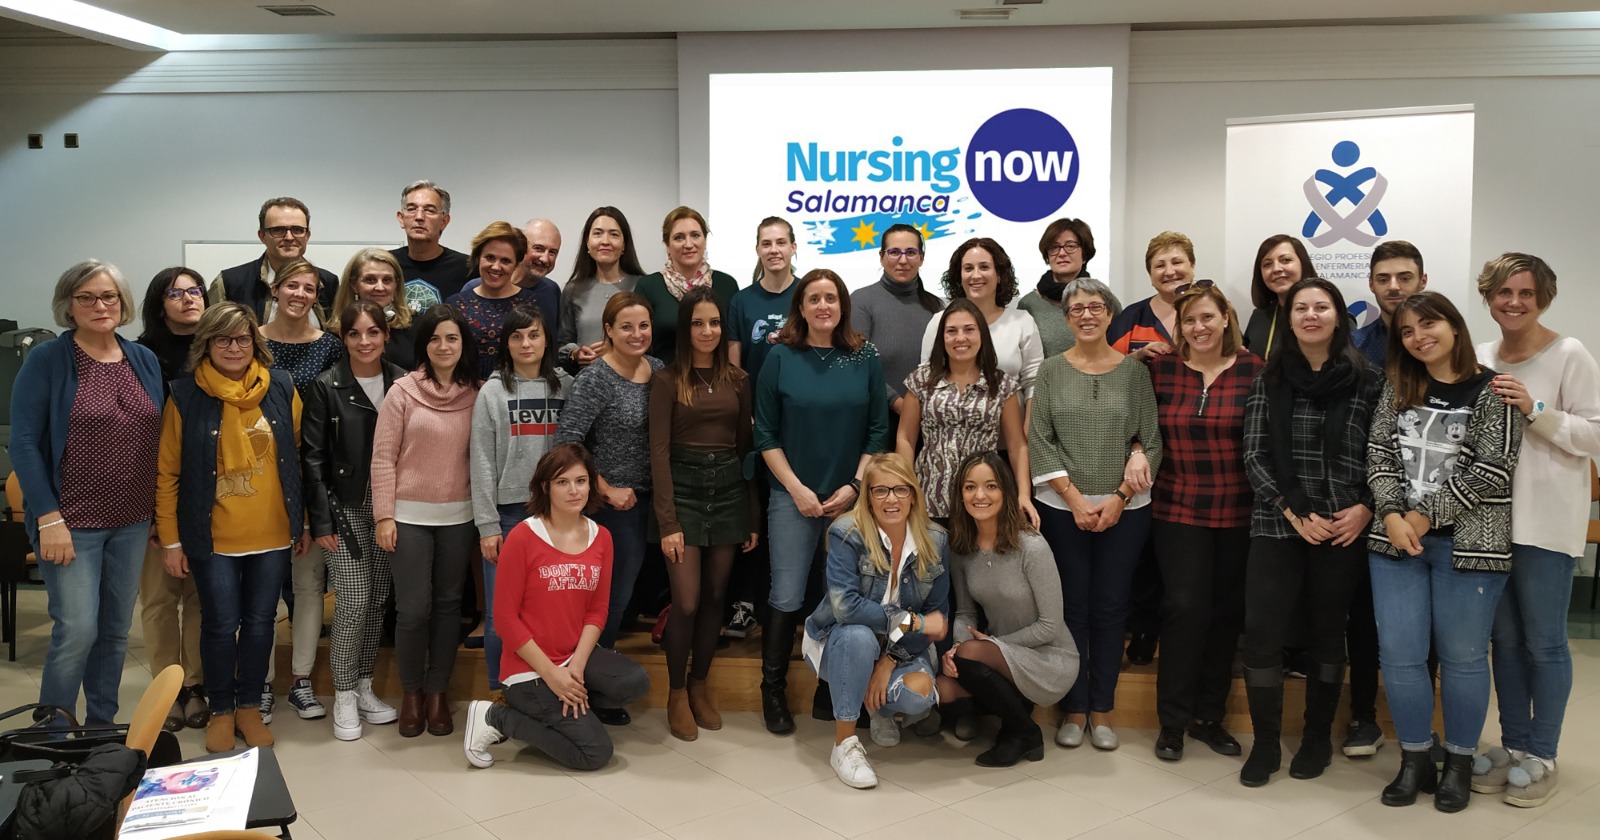 La Facultad de Enfermería y Fisioterapia se une al equipo de trabajo Nursing Now Salamanca para potenciar el liderazgo de los enfermeros